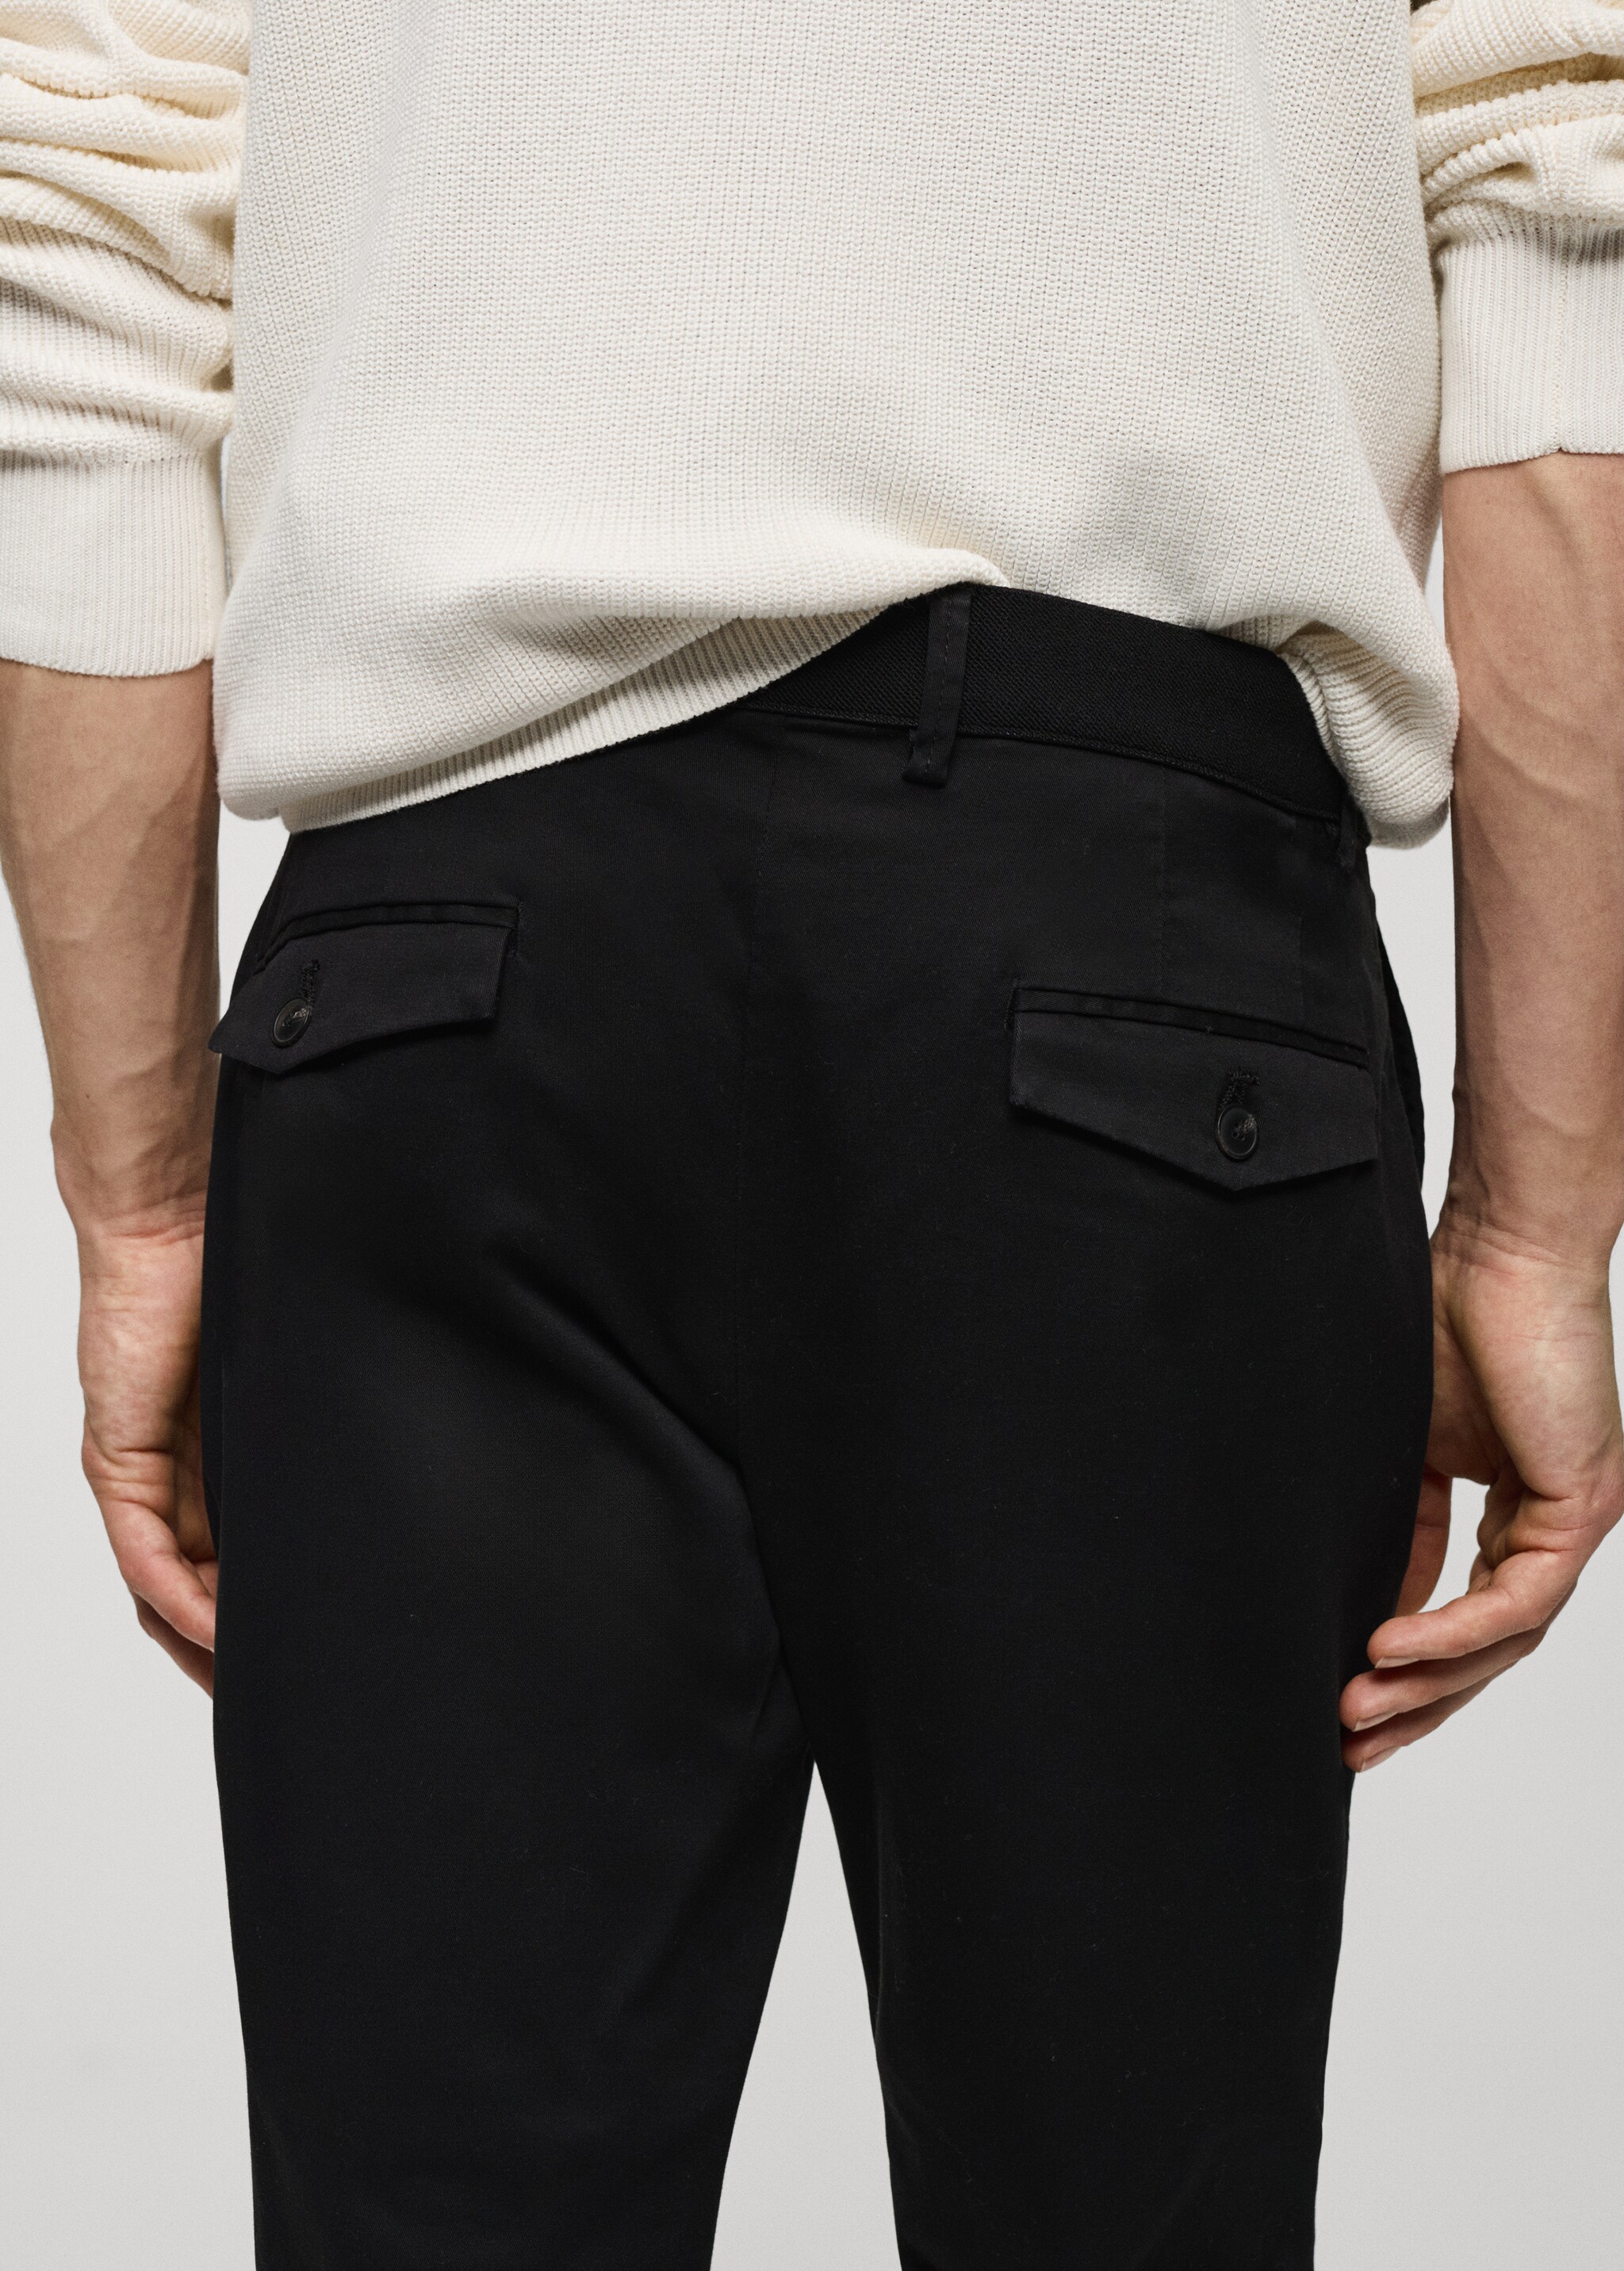 Spodnie bawełniane o fasonie tapered cropped - Szczegóły artykułu 4